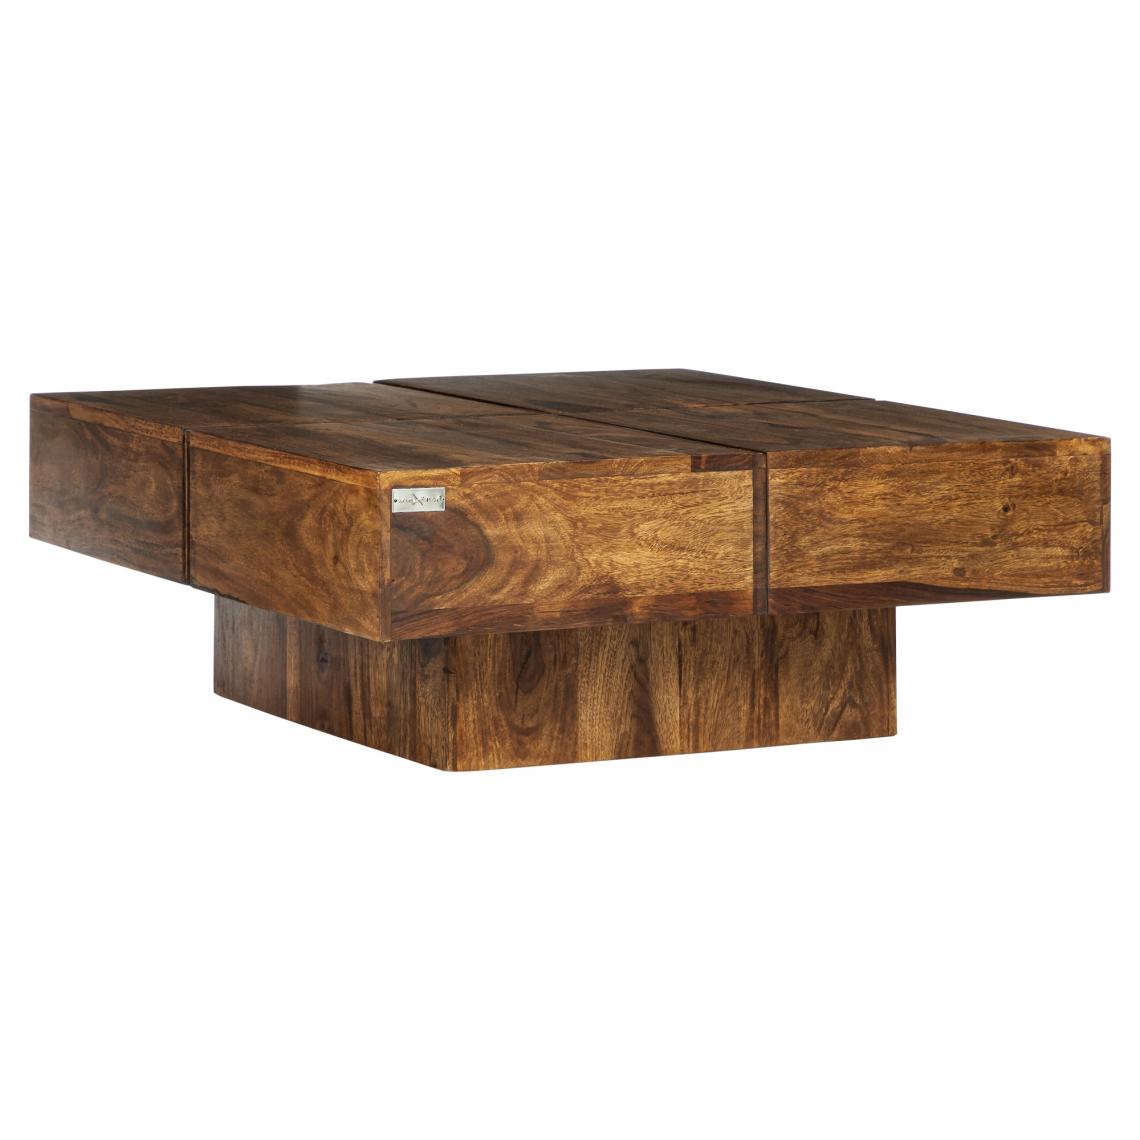 Womo-design - Table basse en bois sheesham massif 80x80x30 cm table canapé rustique pour salon - Tables basses